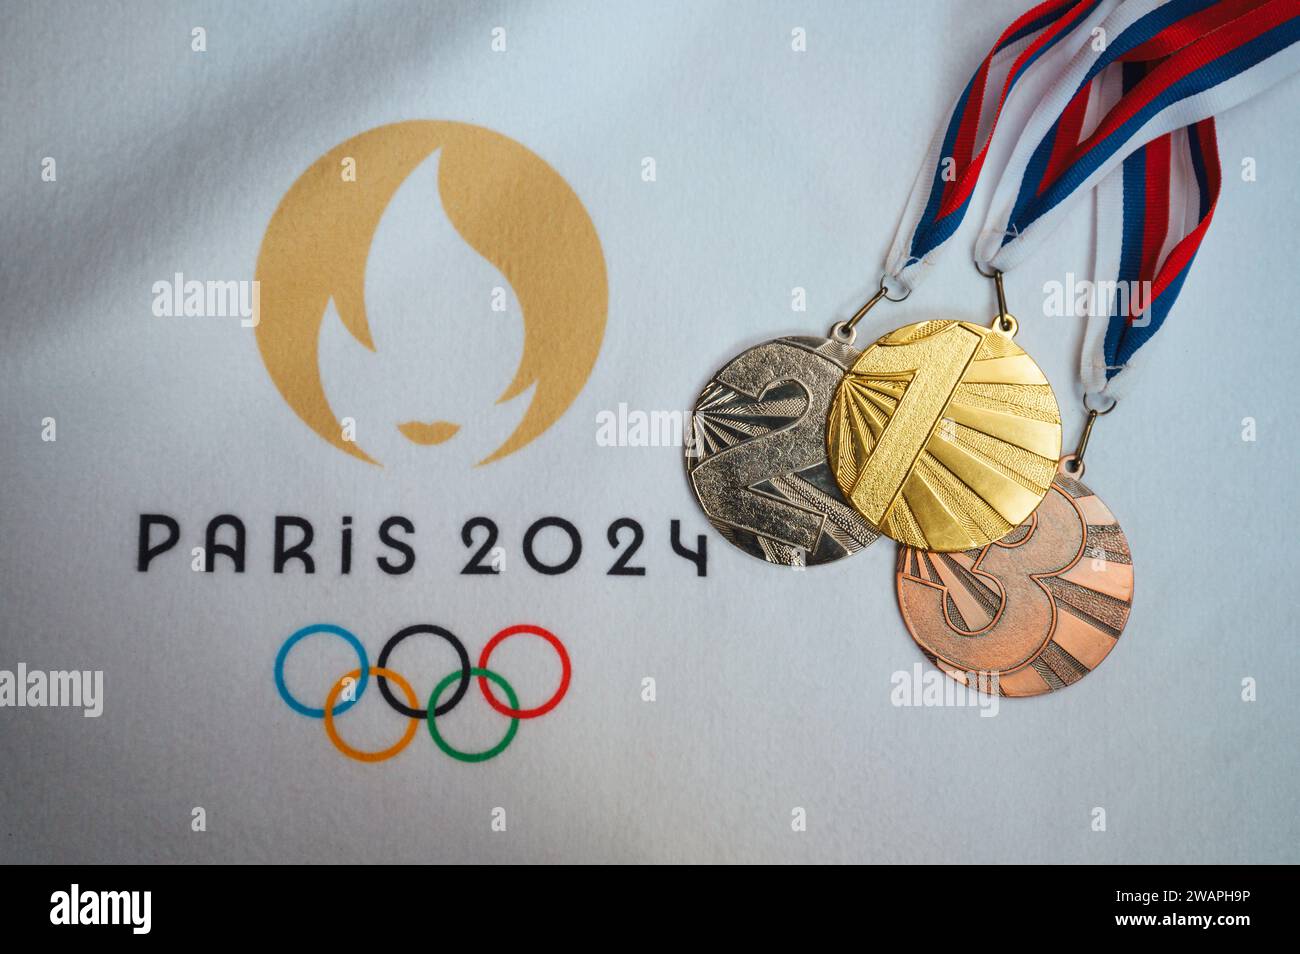 PARÍS, FRANCIA, 4 DE ENERO. 2024: Un destello de la victoria: Medallas de oro, plata y bronce arregladas en manta blanca, logotipo de los Juegos Olímpicos de París 2024 incluido Foto de stock